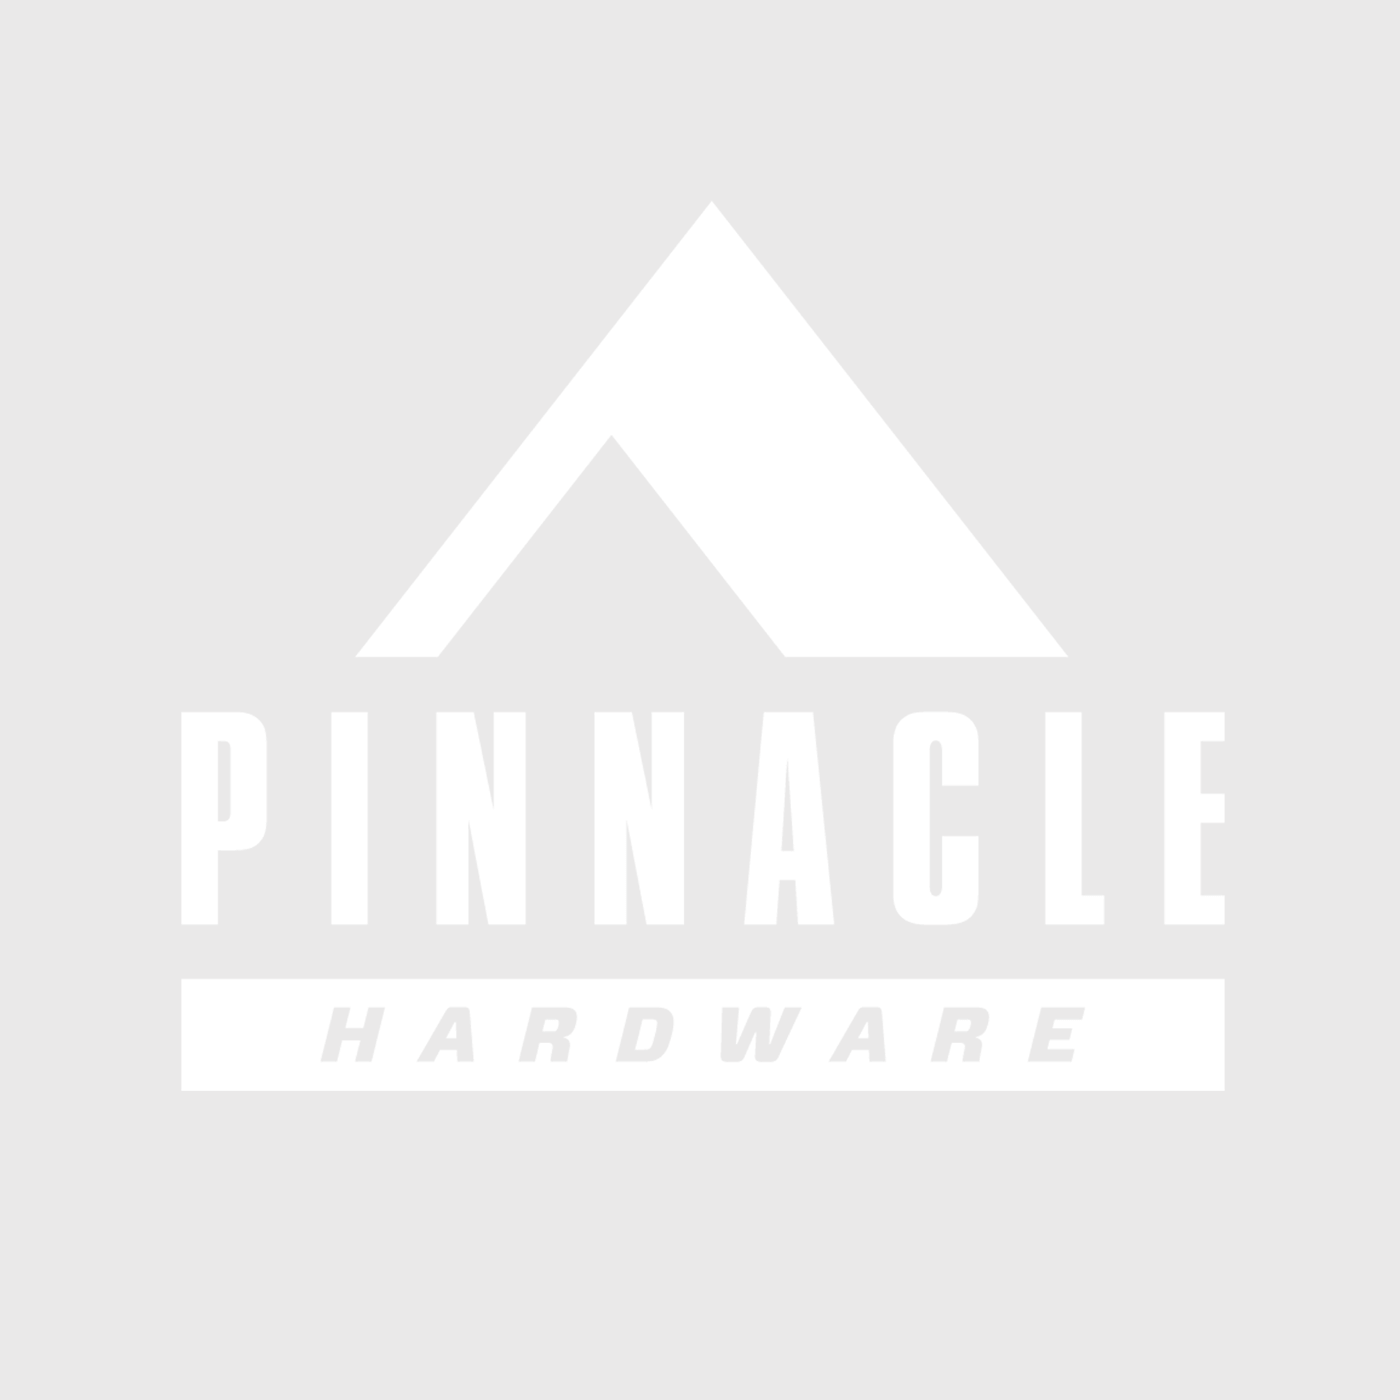 pinnacle hardware